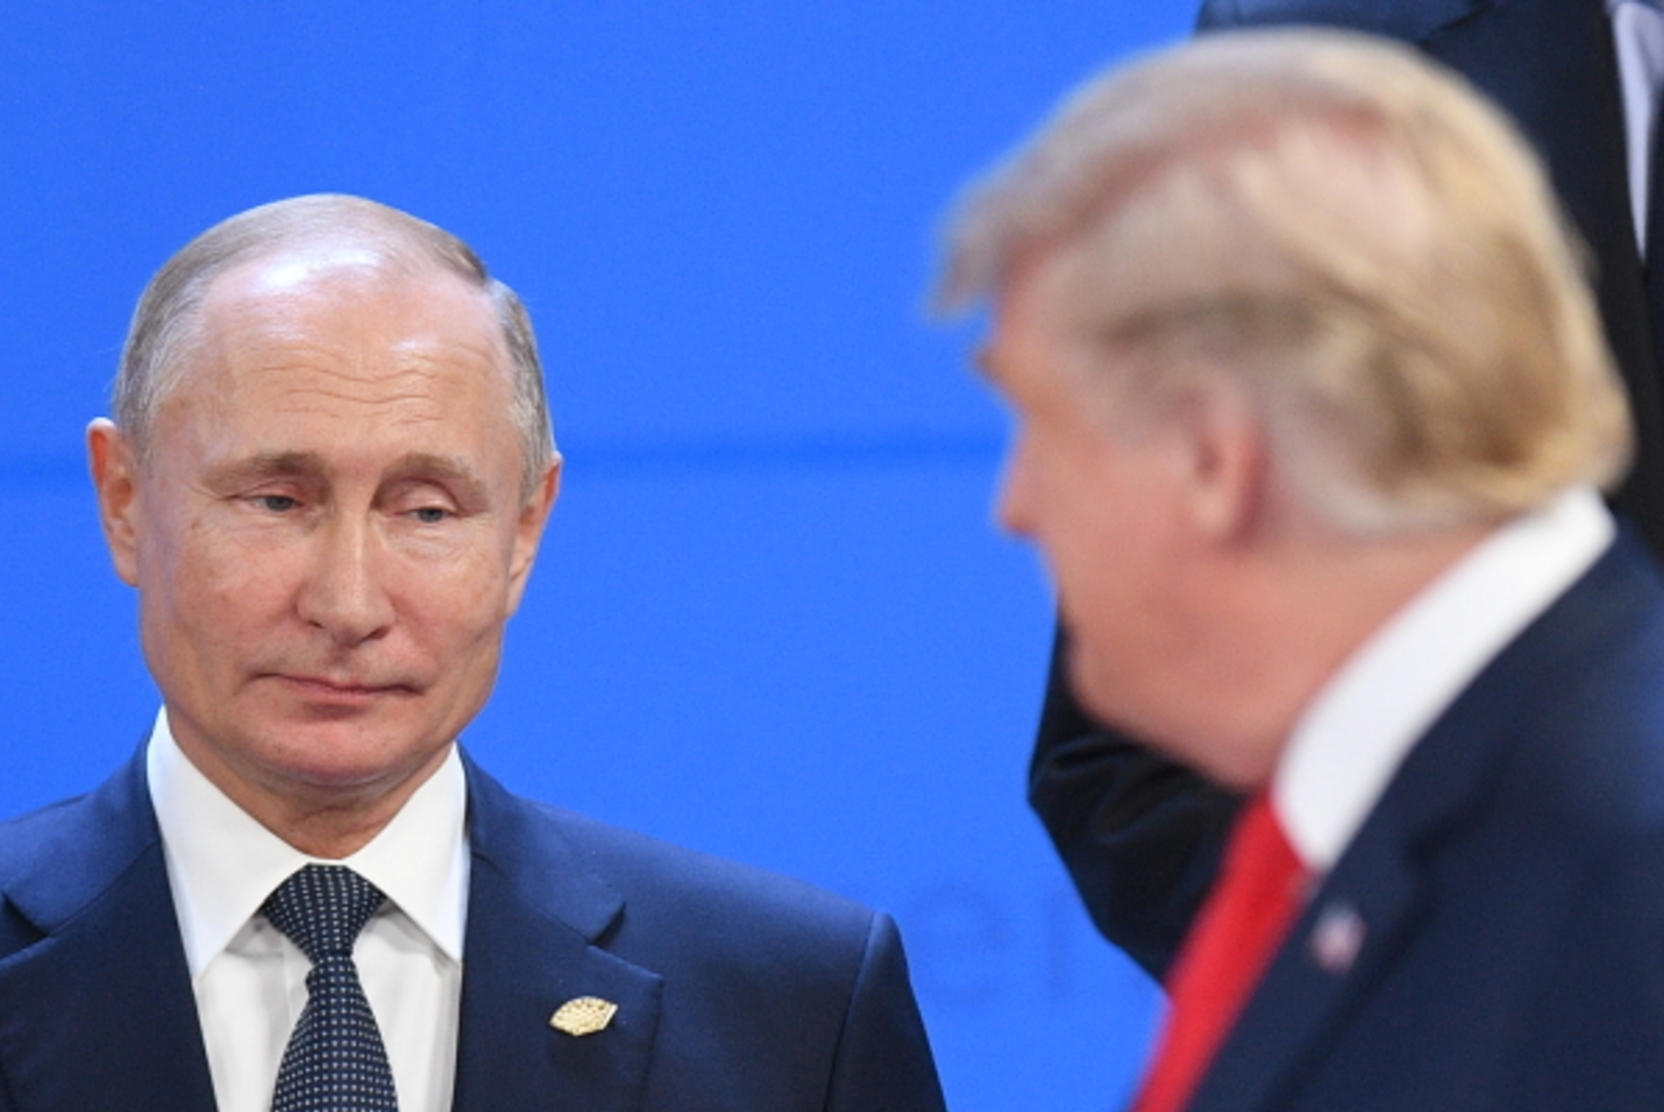 Байден: Трамп преклоняется перед Путиным